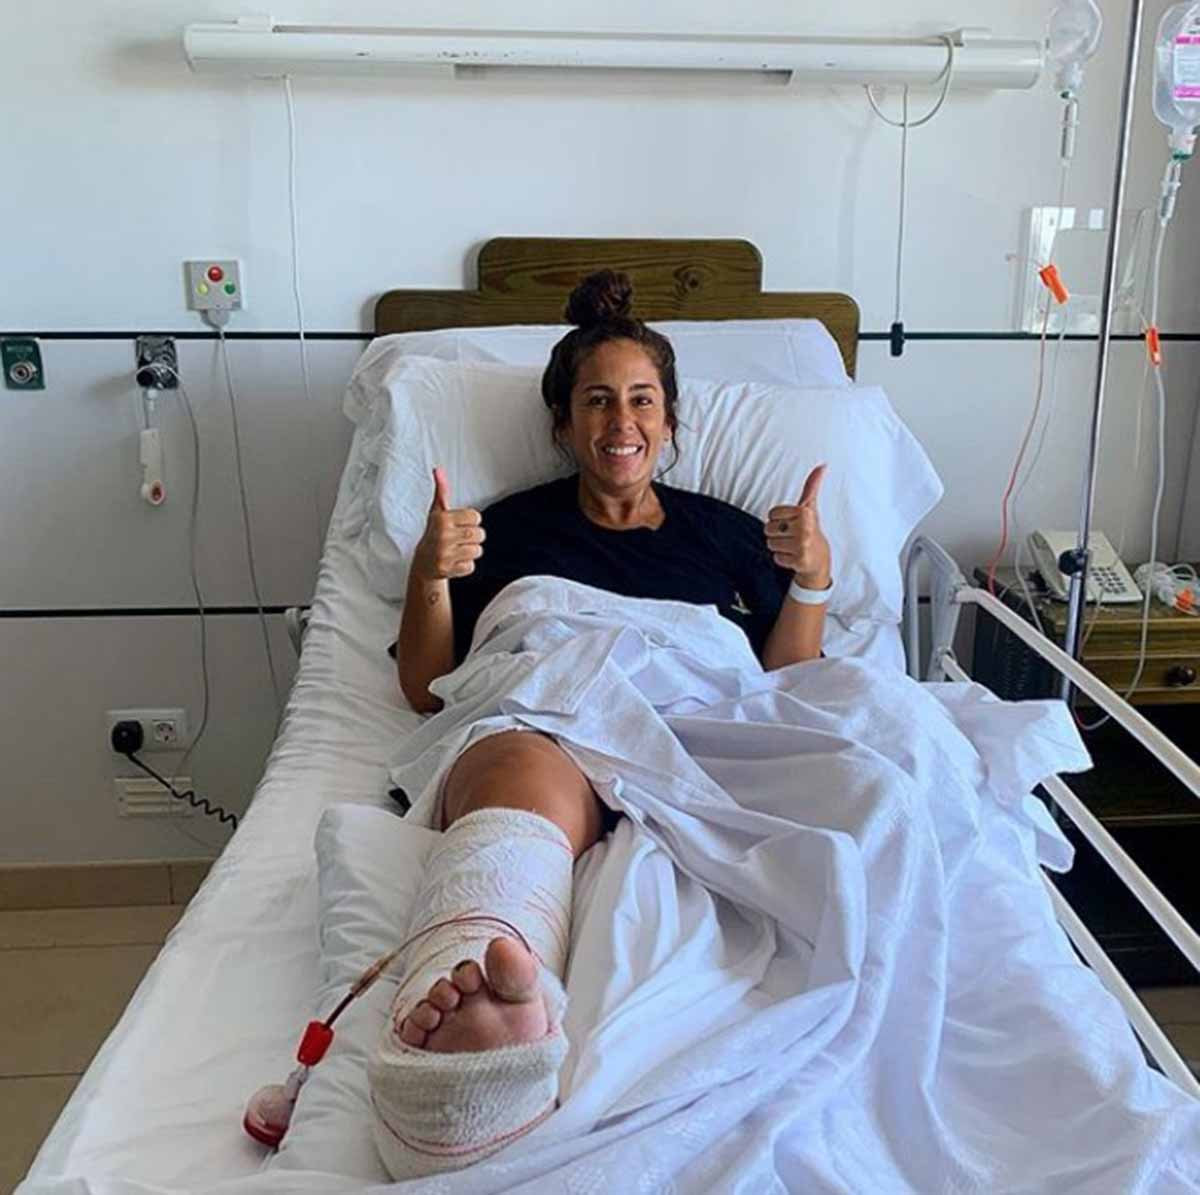 El parte médico de Anabel Pantoja tras ser operada: "Una placa y 5 tornillos"